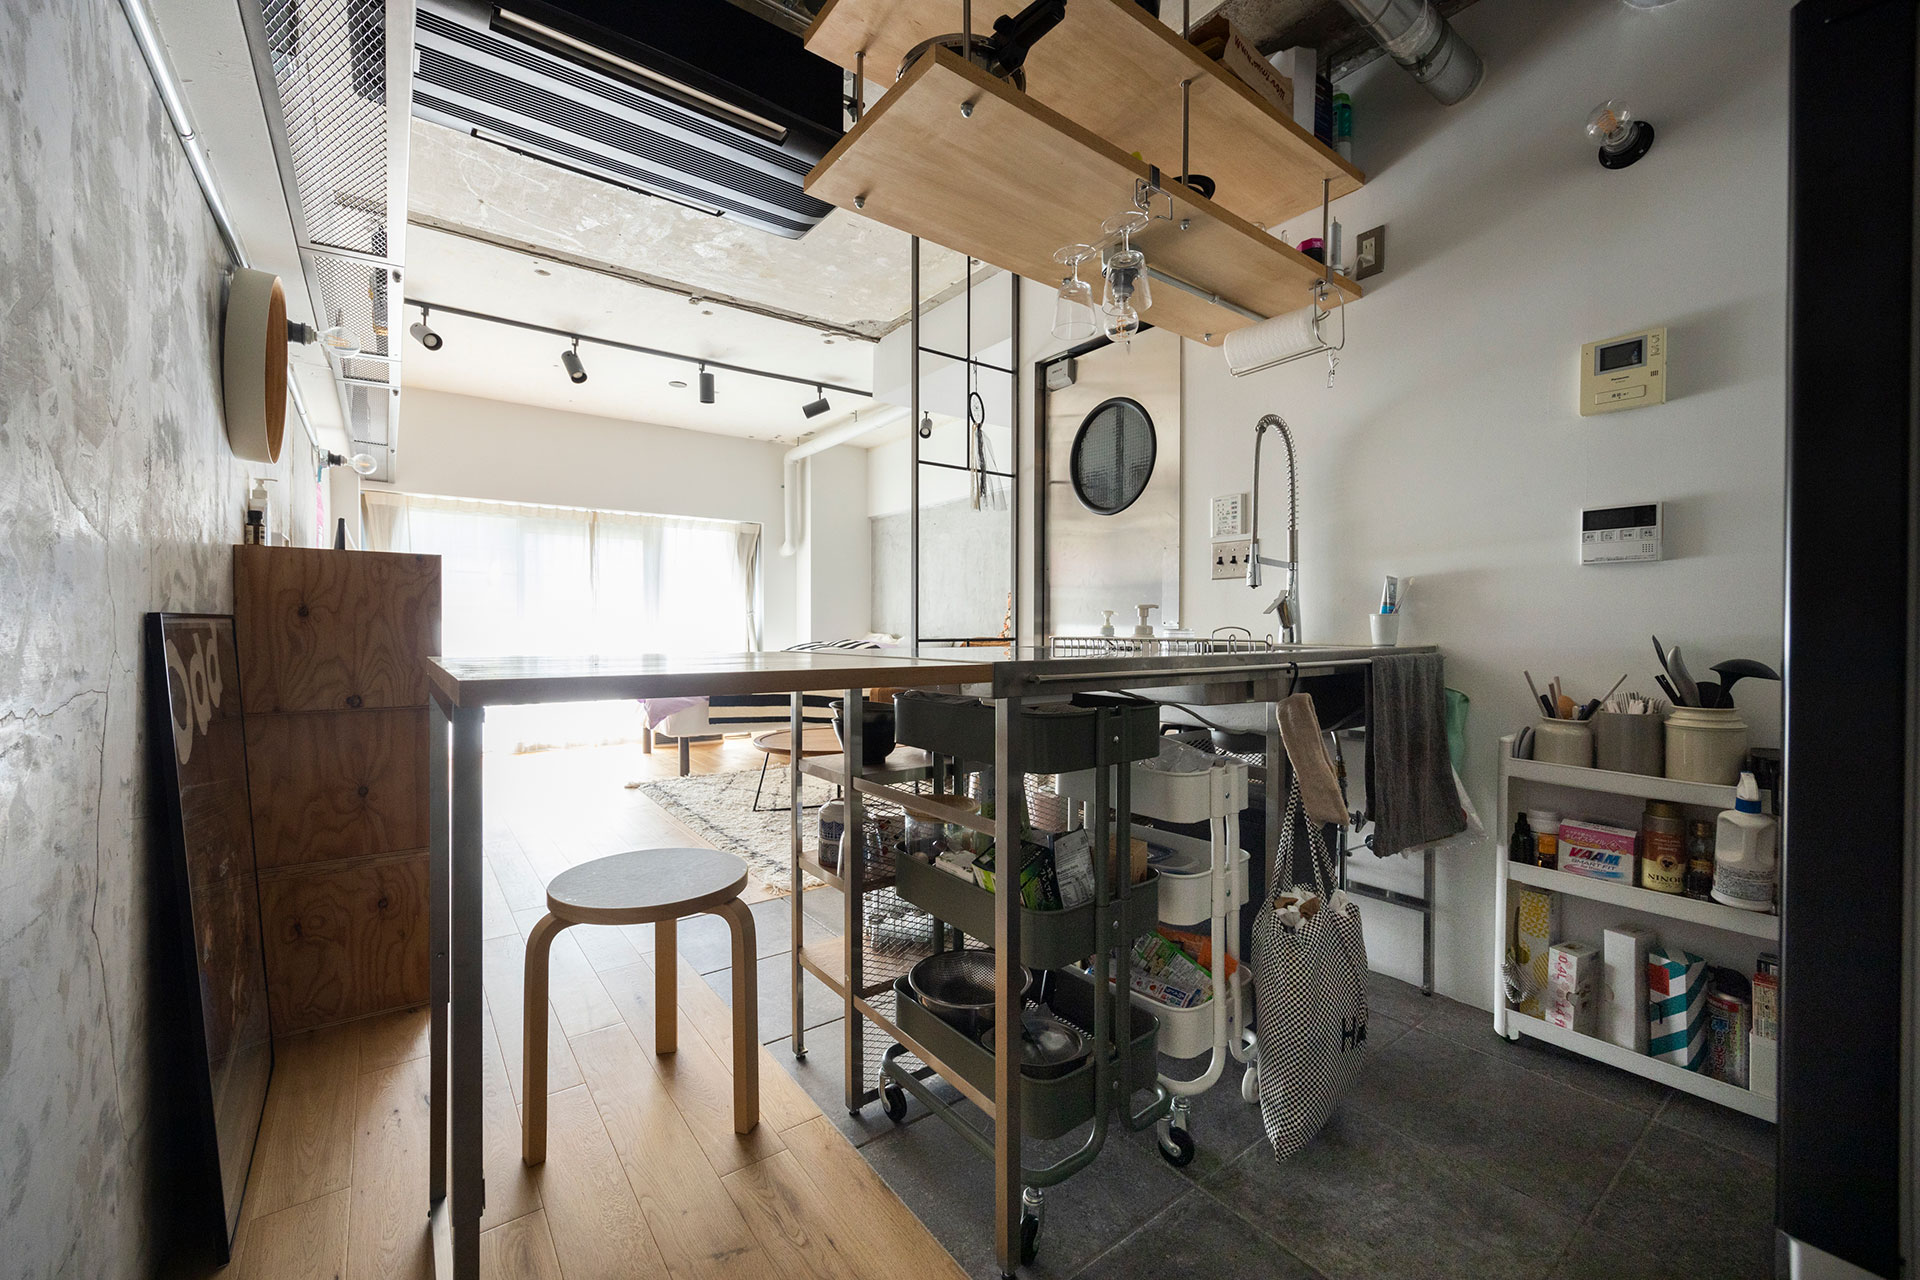 キッチンの作業スペース側。ステンレスの天板とつなげてテーブルをエクステンションすることができる。